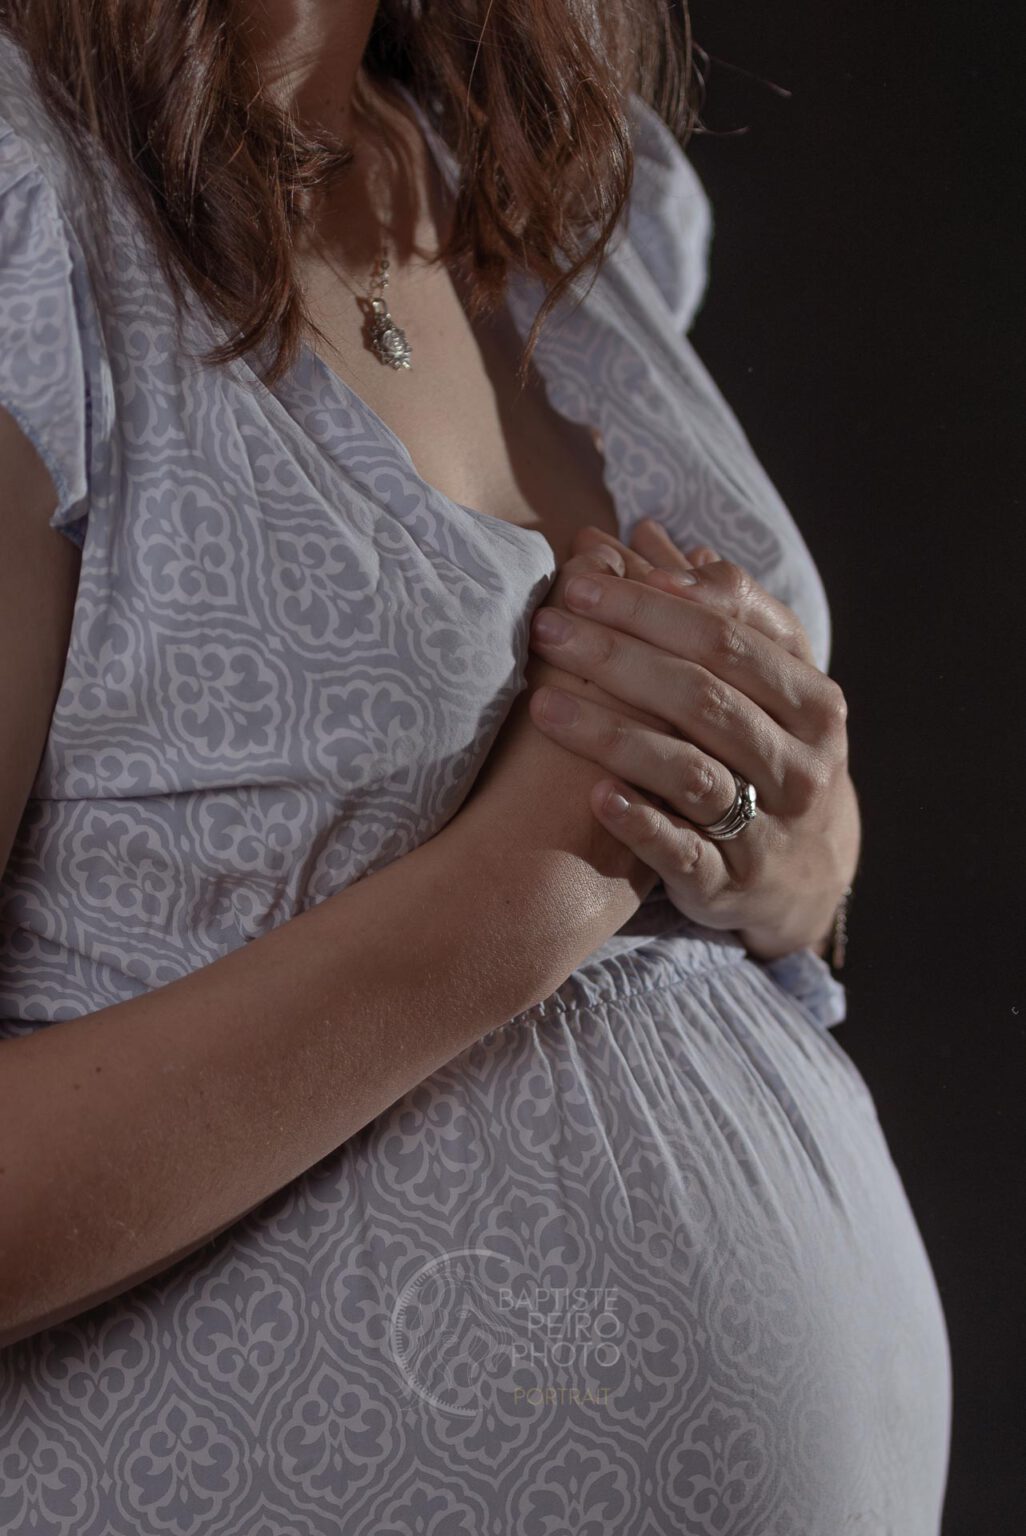 Soraya. Retrato de una bella mujer embarazada por peirophoto